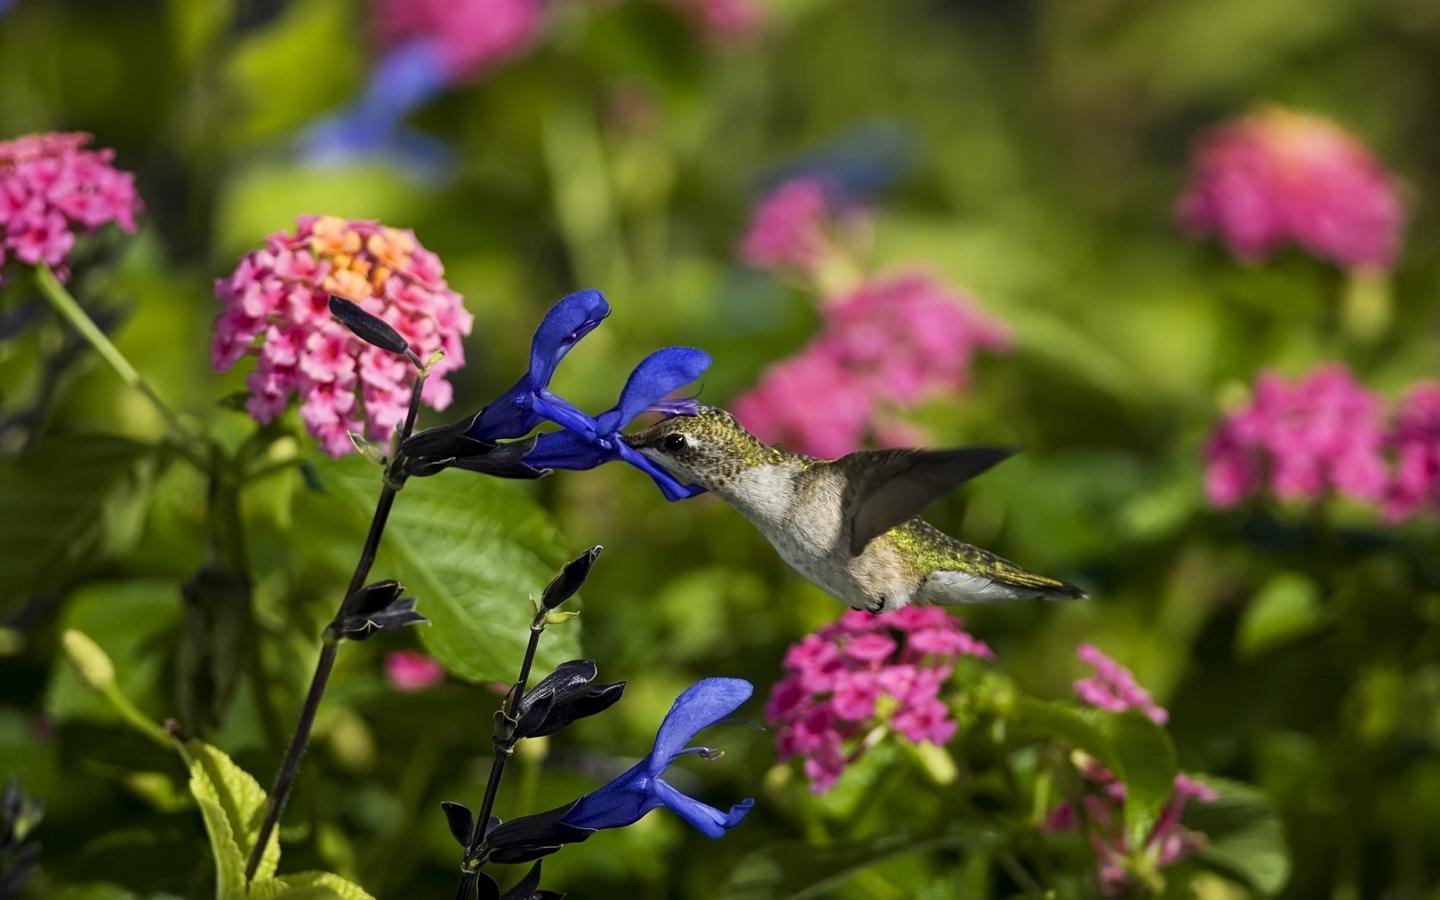 Download wallpaper 1440x900 birds, hummingbirds, flowers